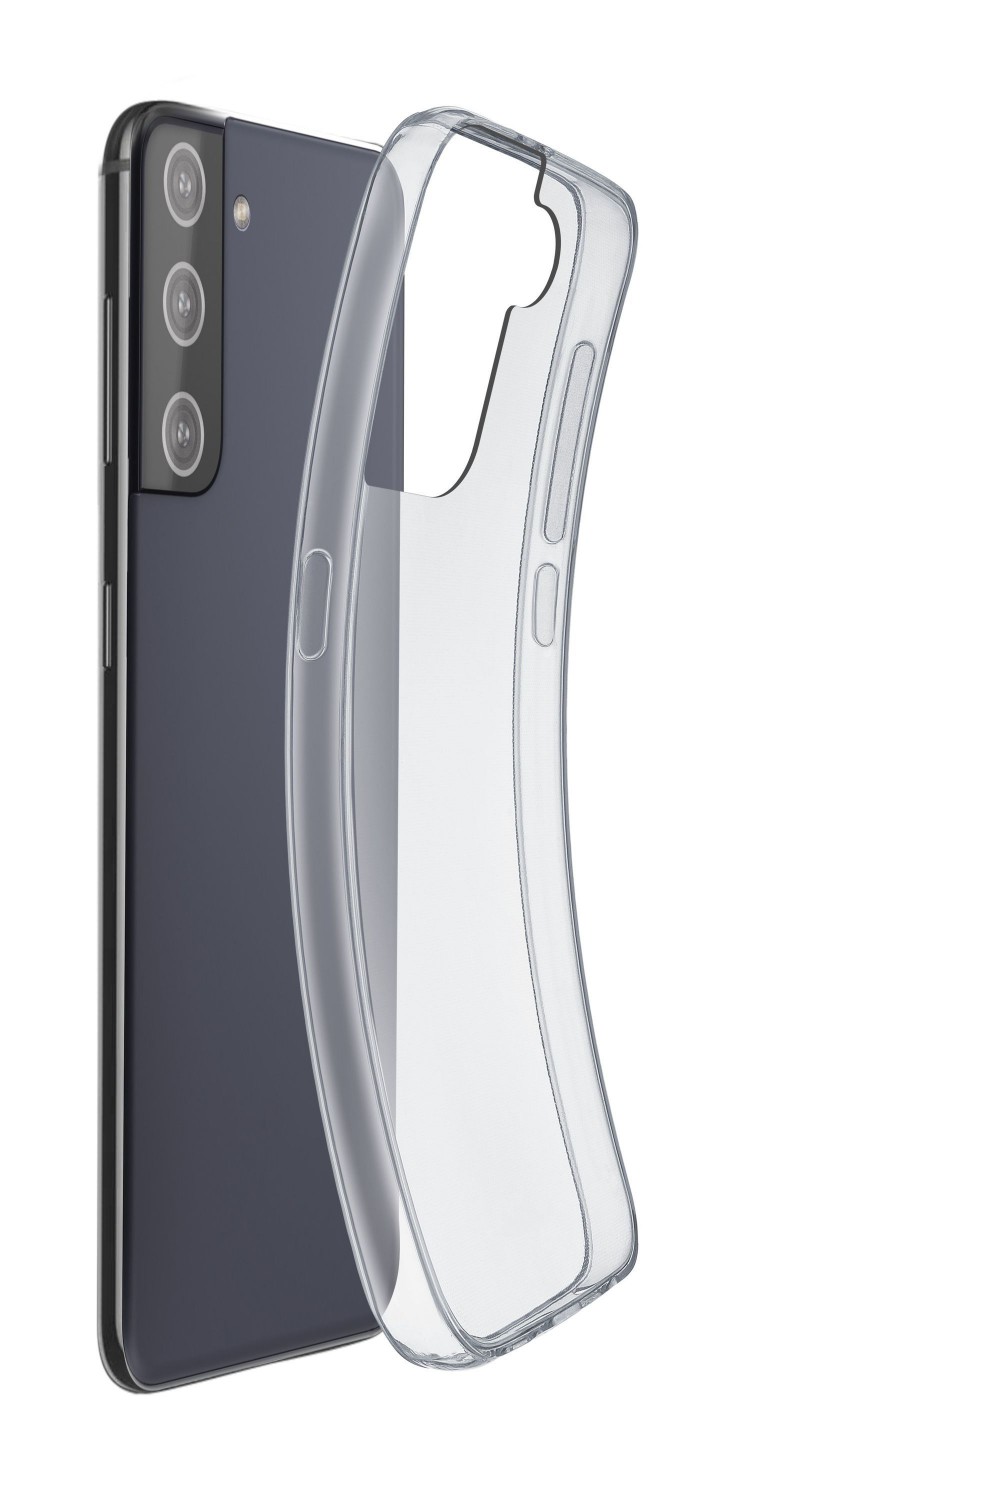 CellularLine Fine extratenký zadný kryt pre Samsung Galaxy S21 +, transparentné